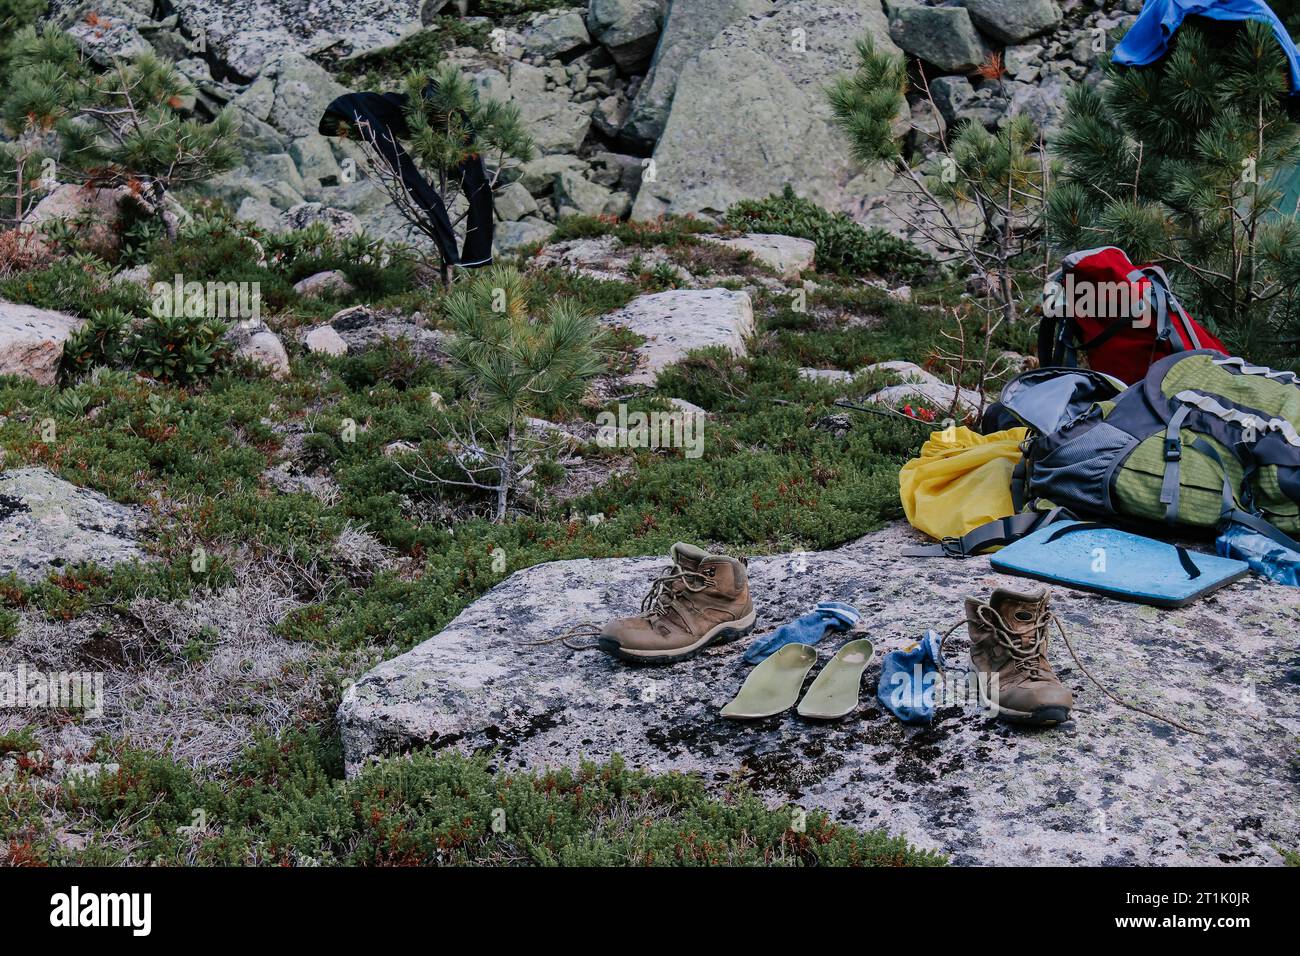 Matériel de séchage après une randonnée au camping. Vieilles bottes de trekking brunes, semelles vertes et chaussettes bleues à sécher après une journée de randonnée, disposées sur pierre. W Banque D'Images